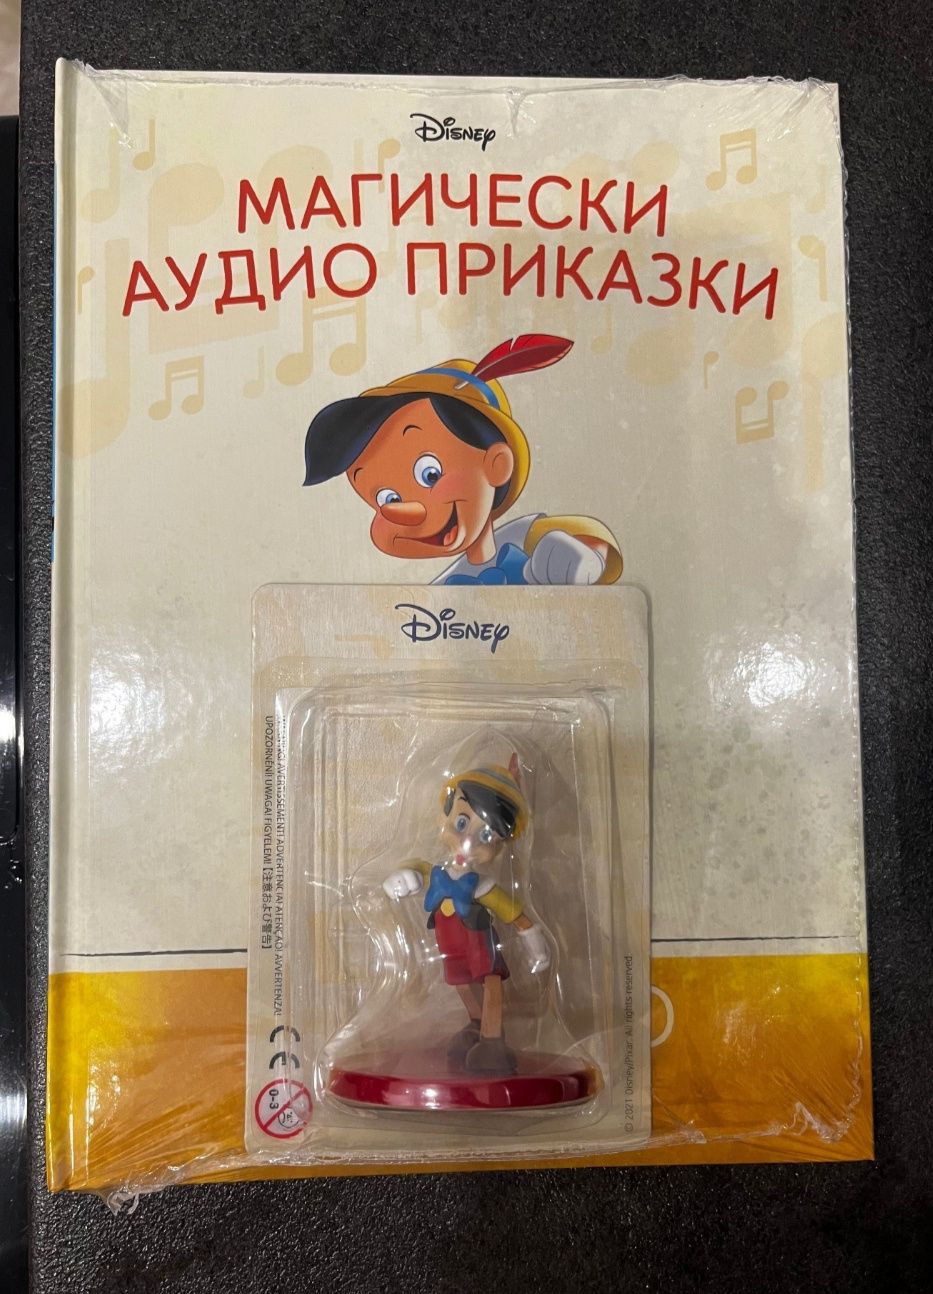 Пинокио, магически приказки